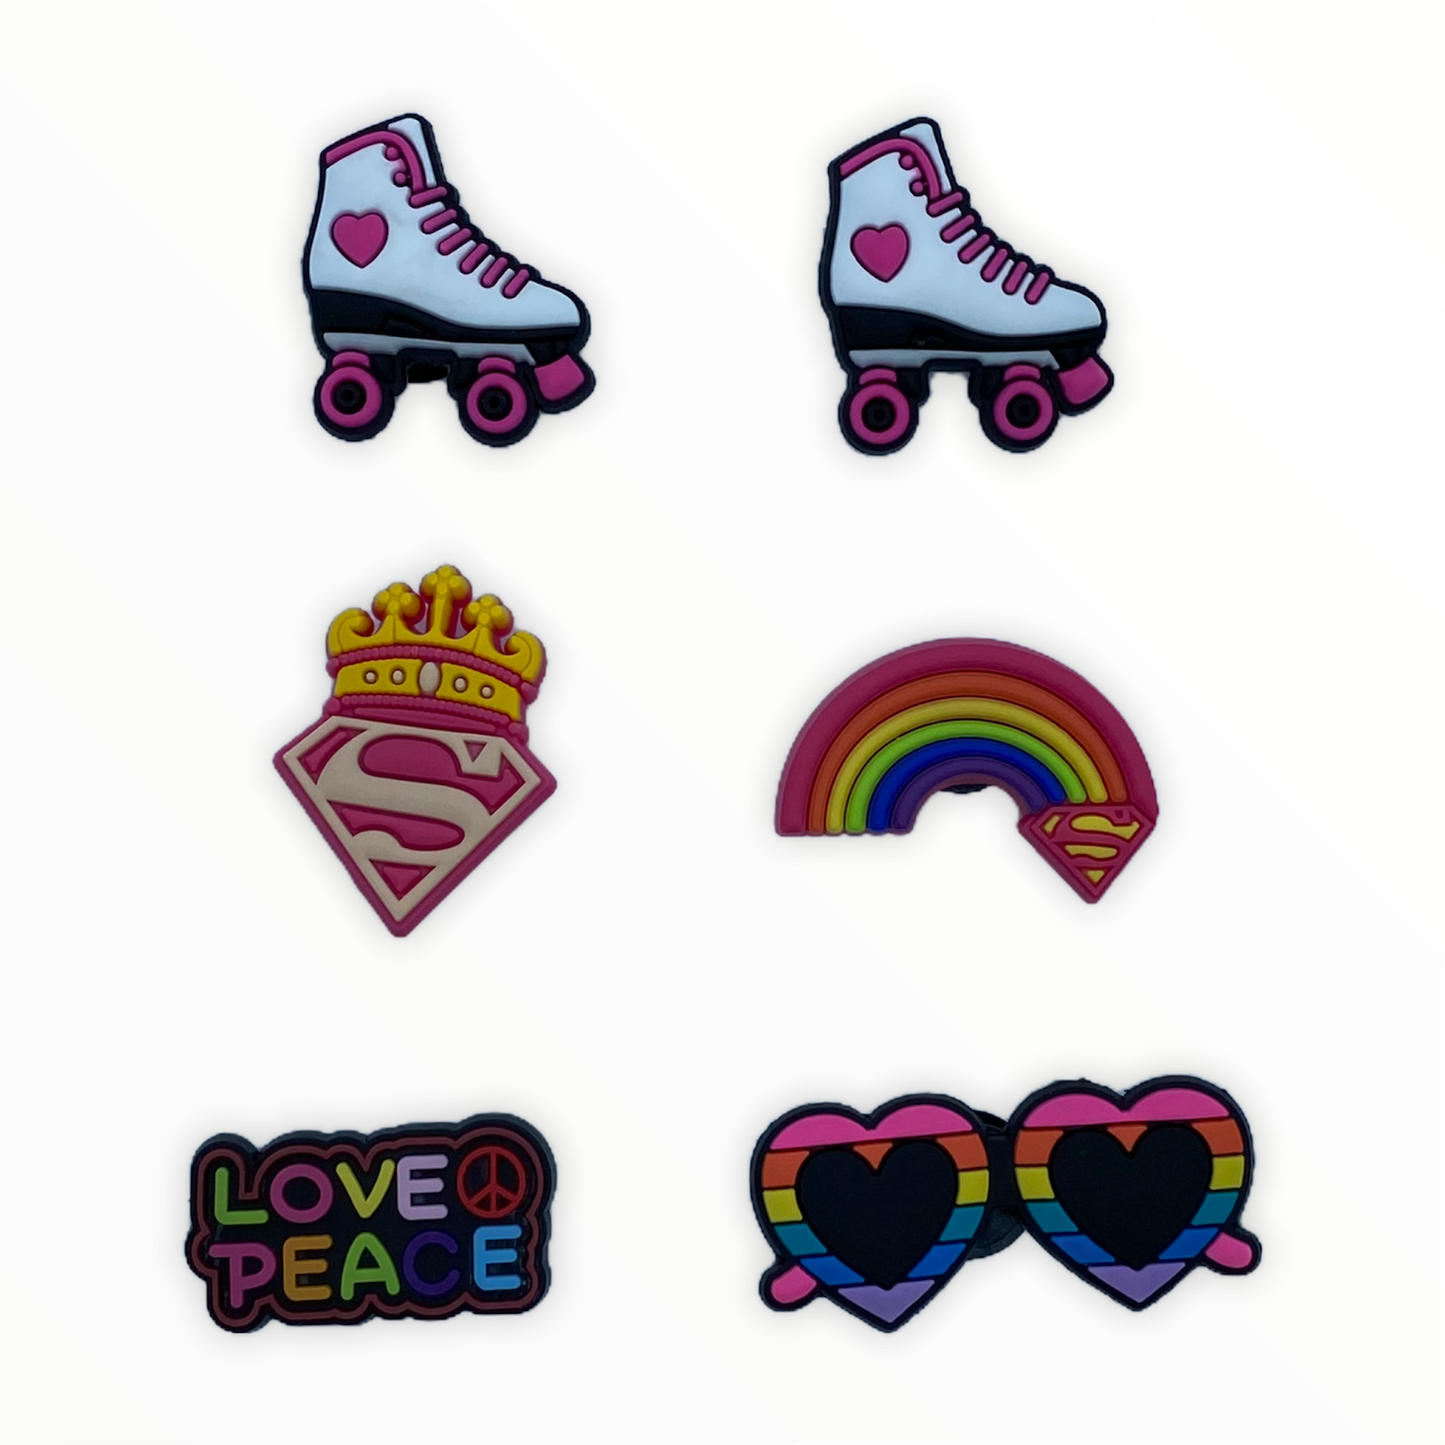 JENDORE 6 pcs Lot Super Love Peace Roller Skates Shoe Charms for Bracelets or Clogs